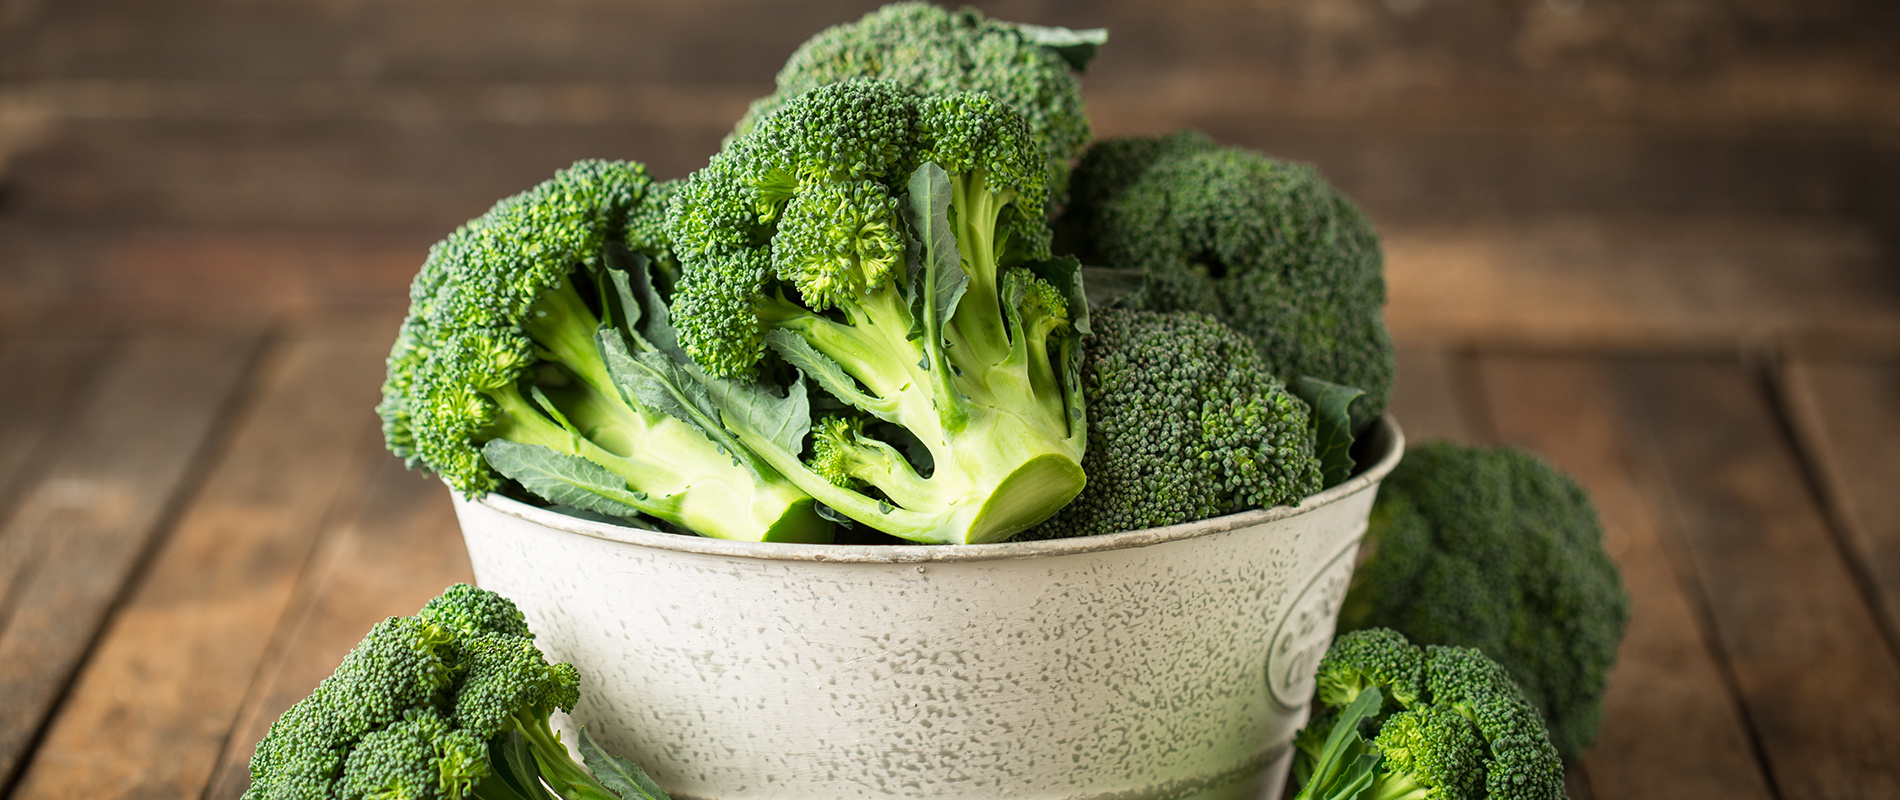 Milyen egészségügyi előnyei vannak a brokkolinak?